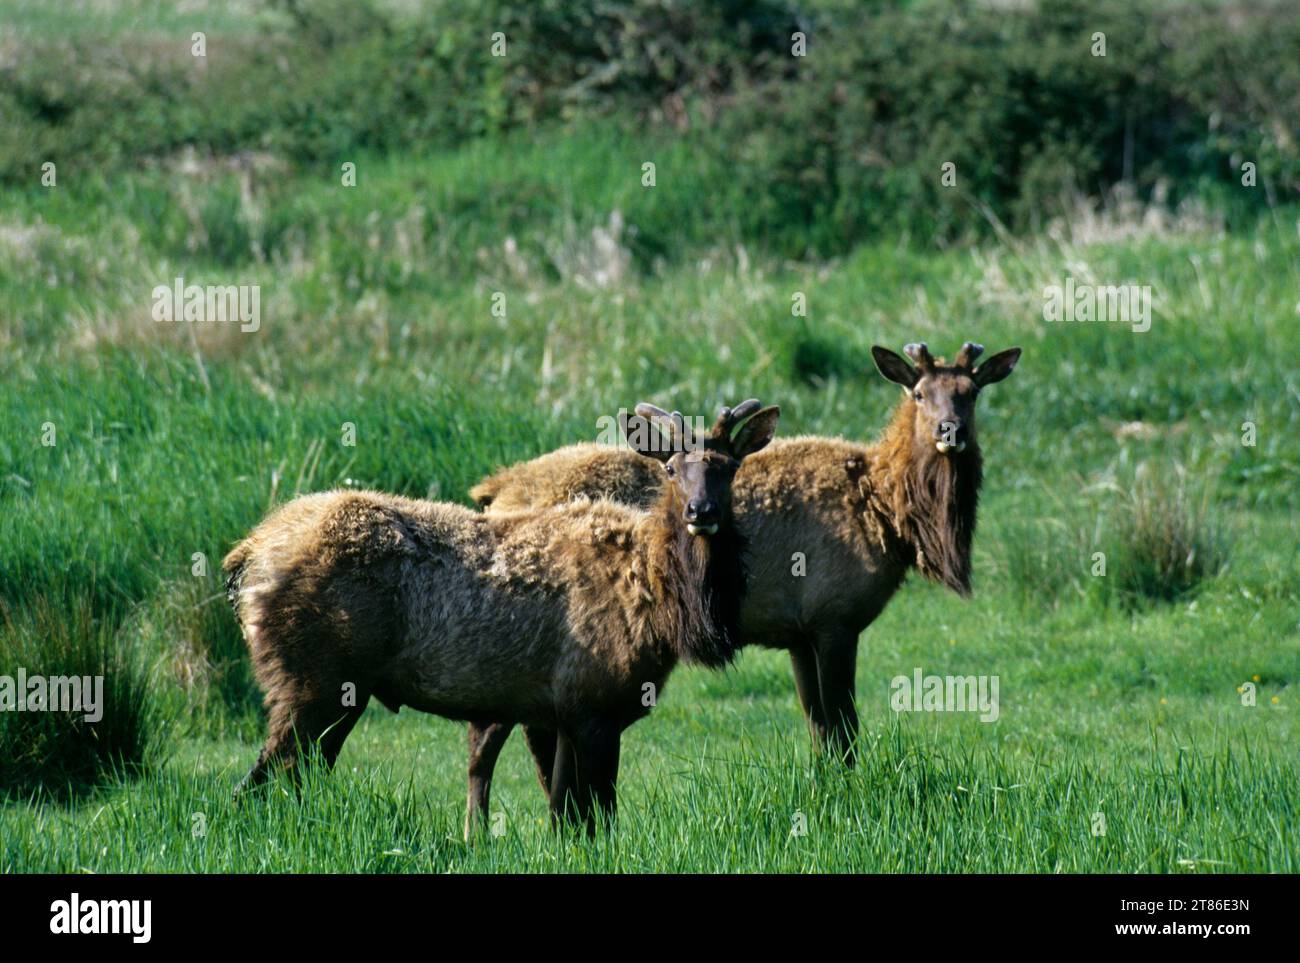 Roosevelt elk (Cervus canadensis roosevelti), Deans Creek Wildlife Area, Oregon Stock Photo